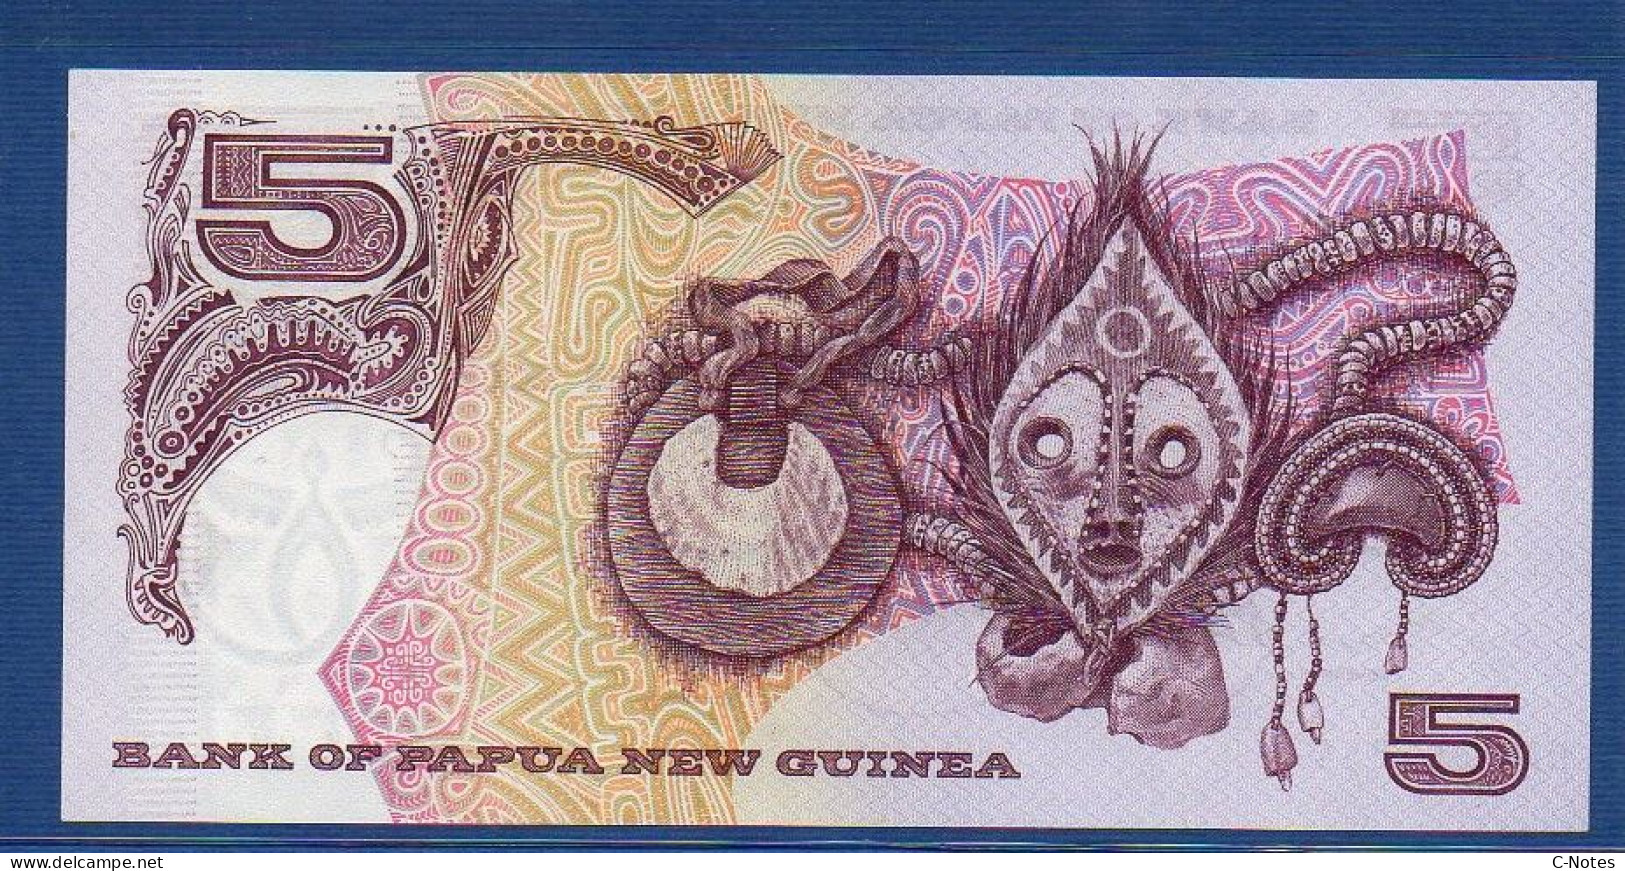 PAPUA NEW GUINEA - P. 6a – 5 KINA ND (1981-1987) UNC, S/n HAK 004854 - Papouasie-Nouvelle-Guinée